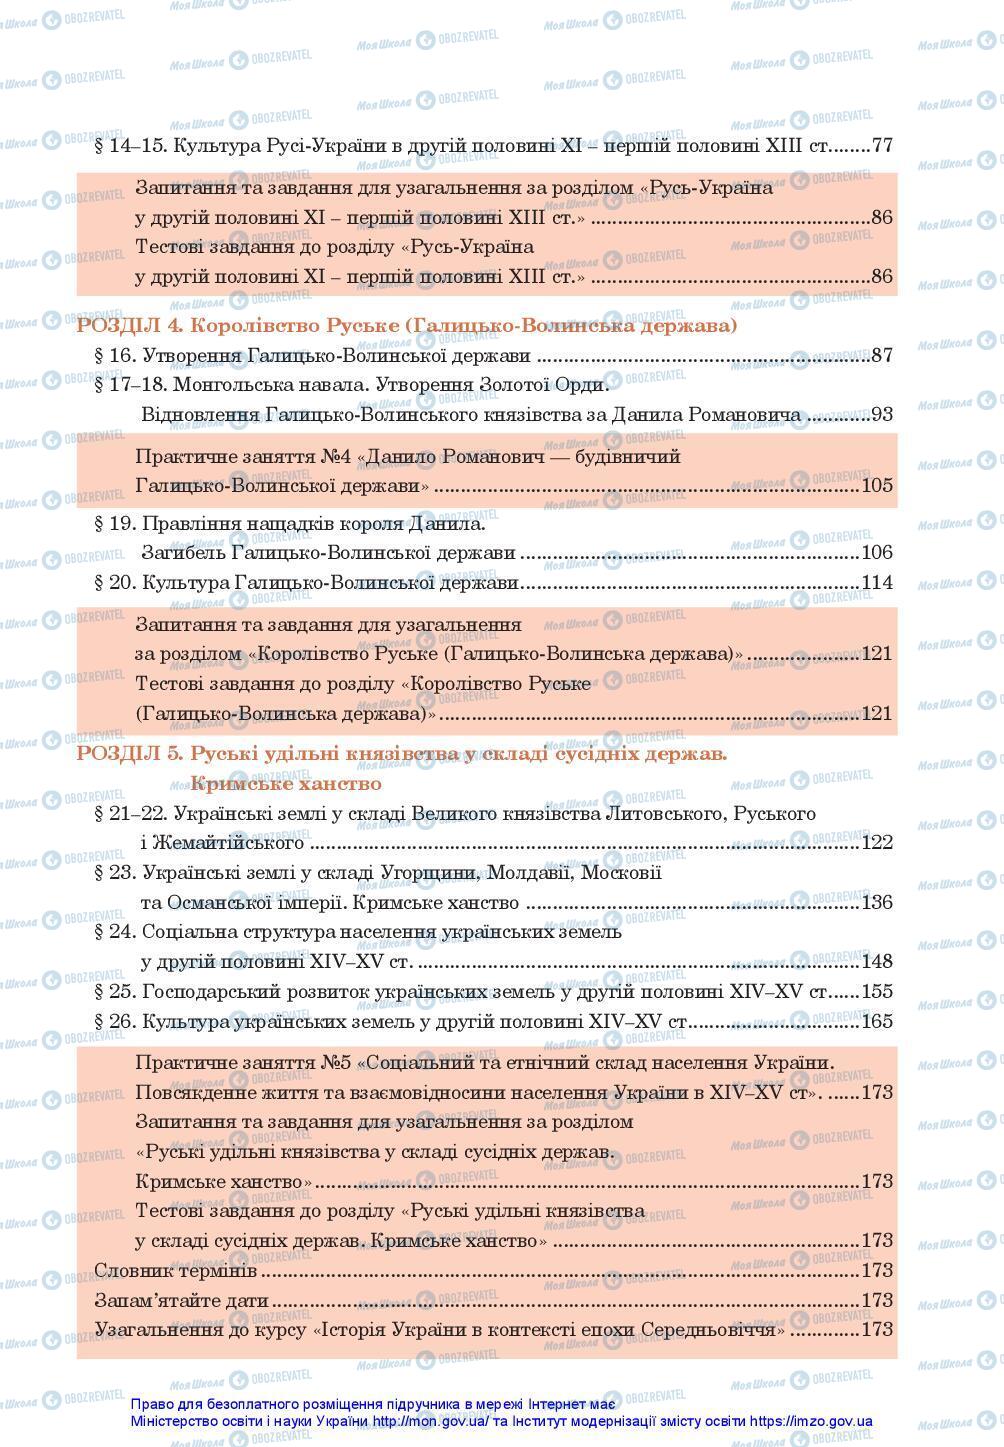 Підручники Історія України 7 клас сторінка 175